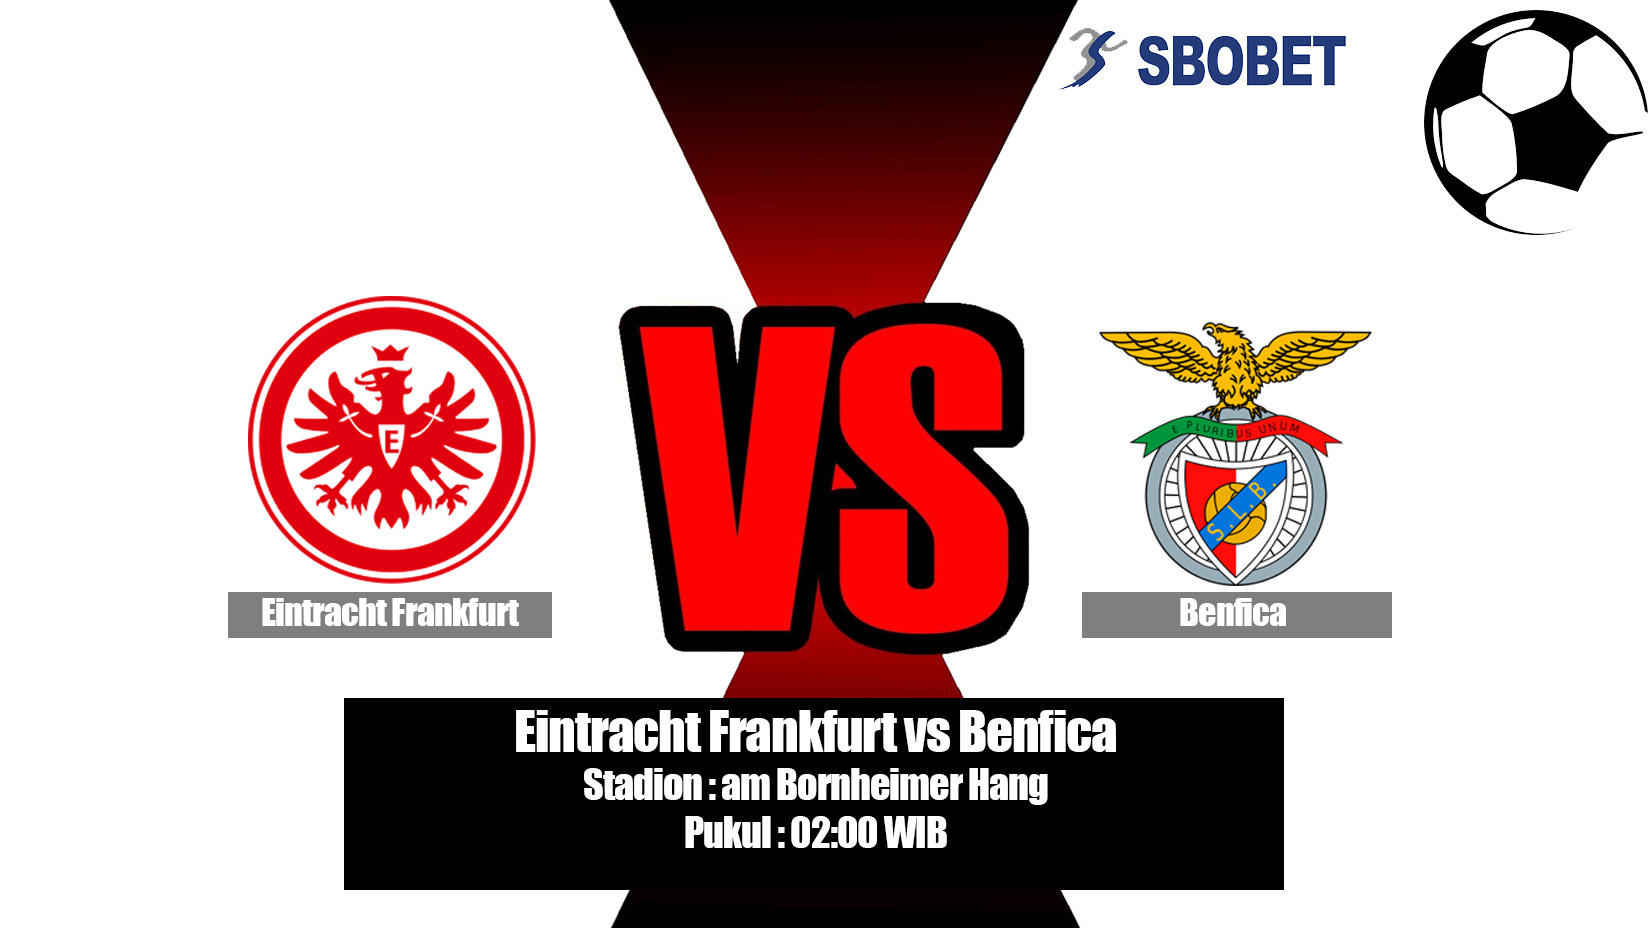 Prediksi Bola Eintracht Frankfurt vs Benfica 19 April 2019